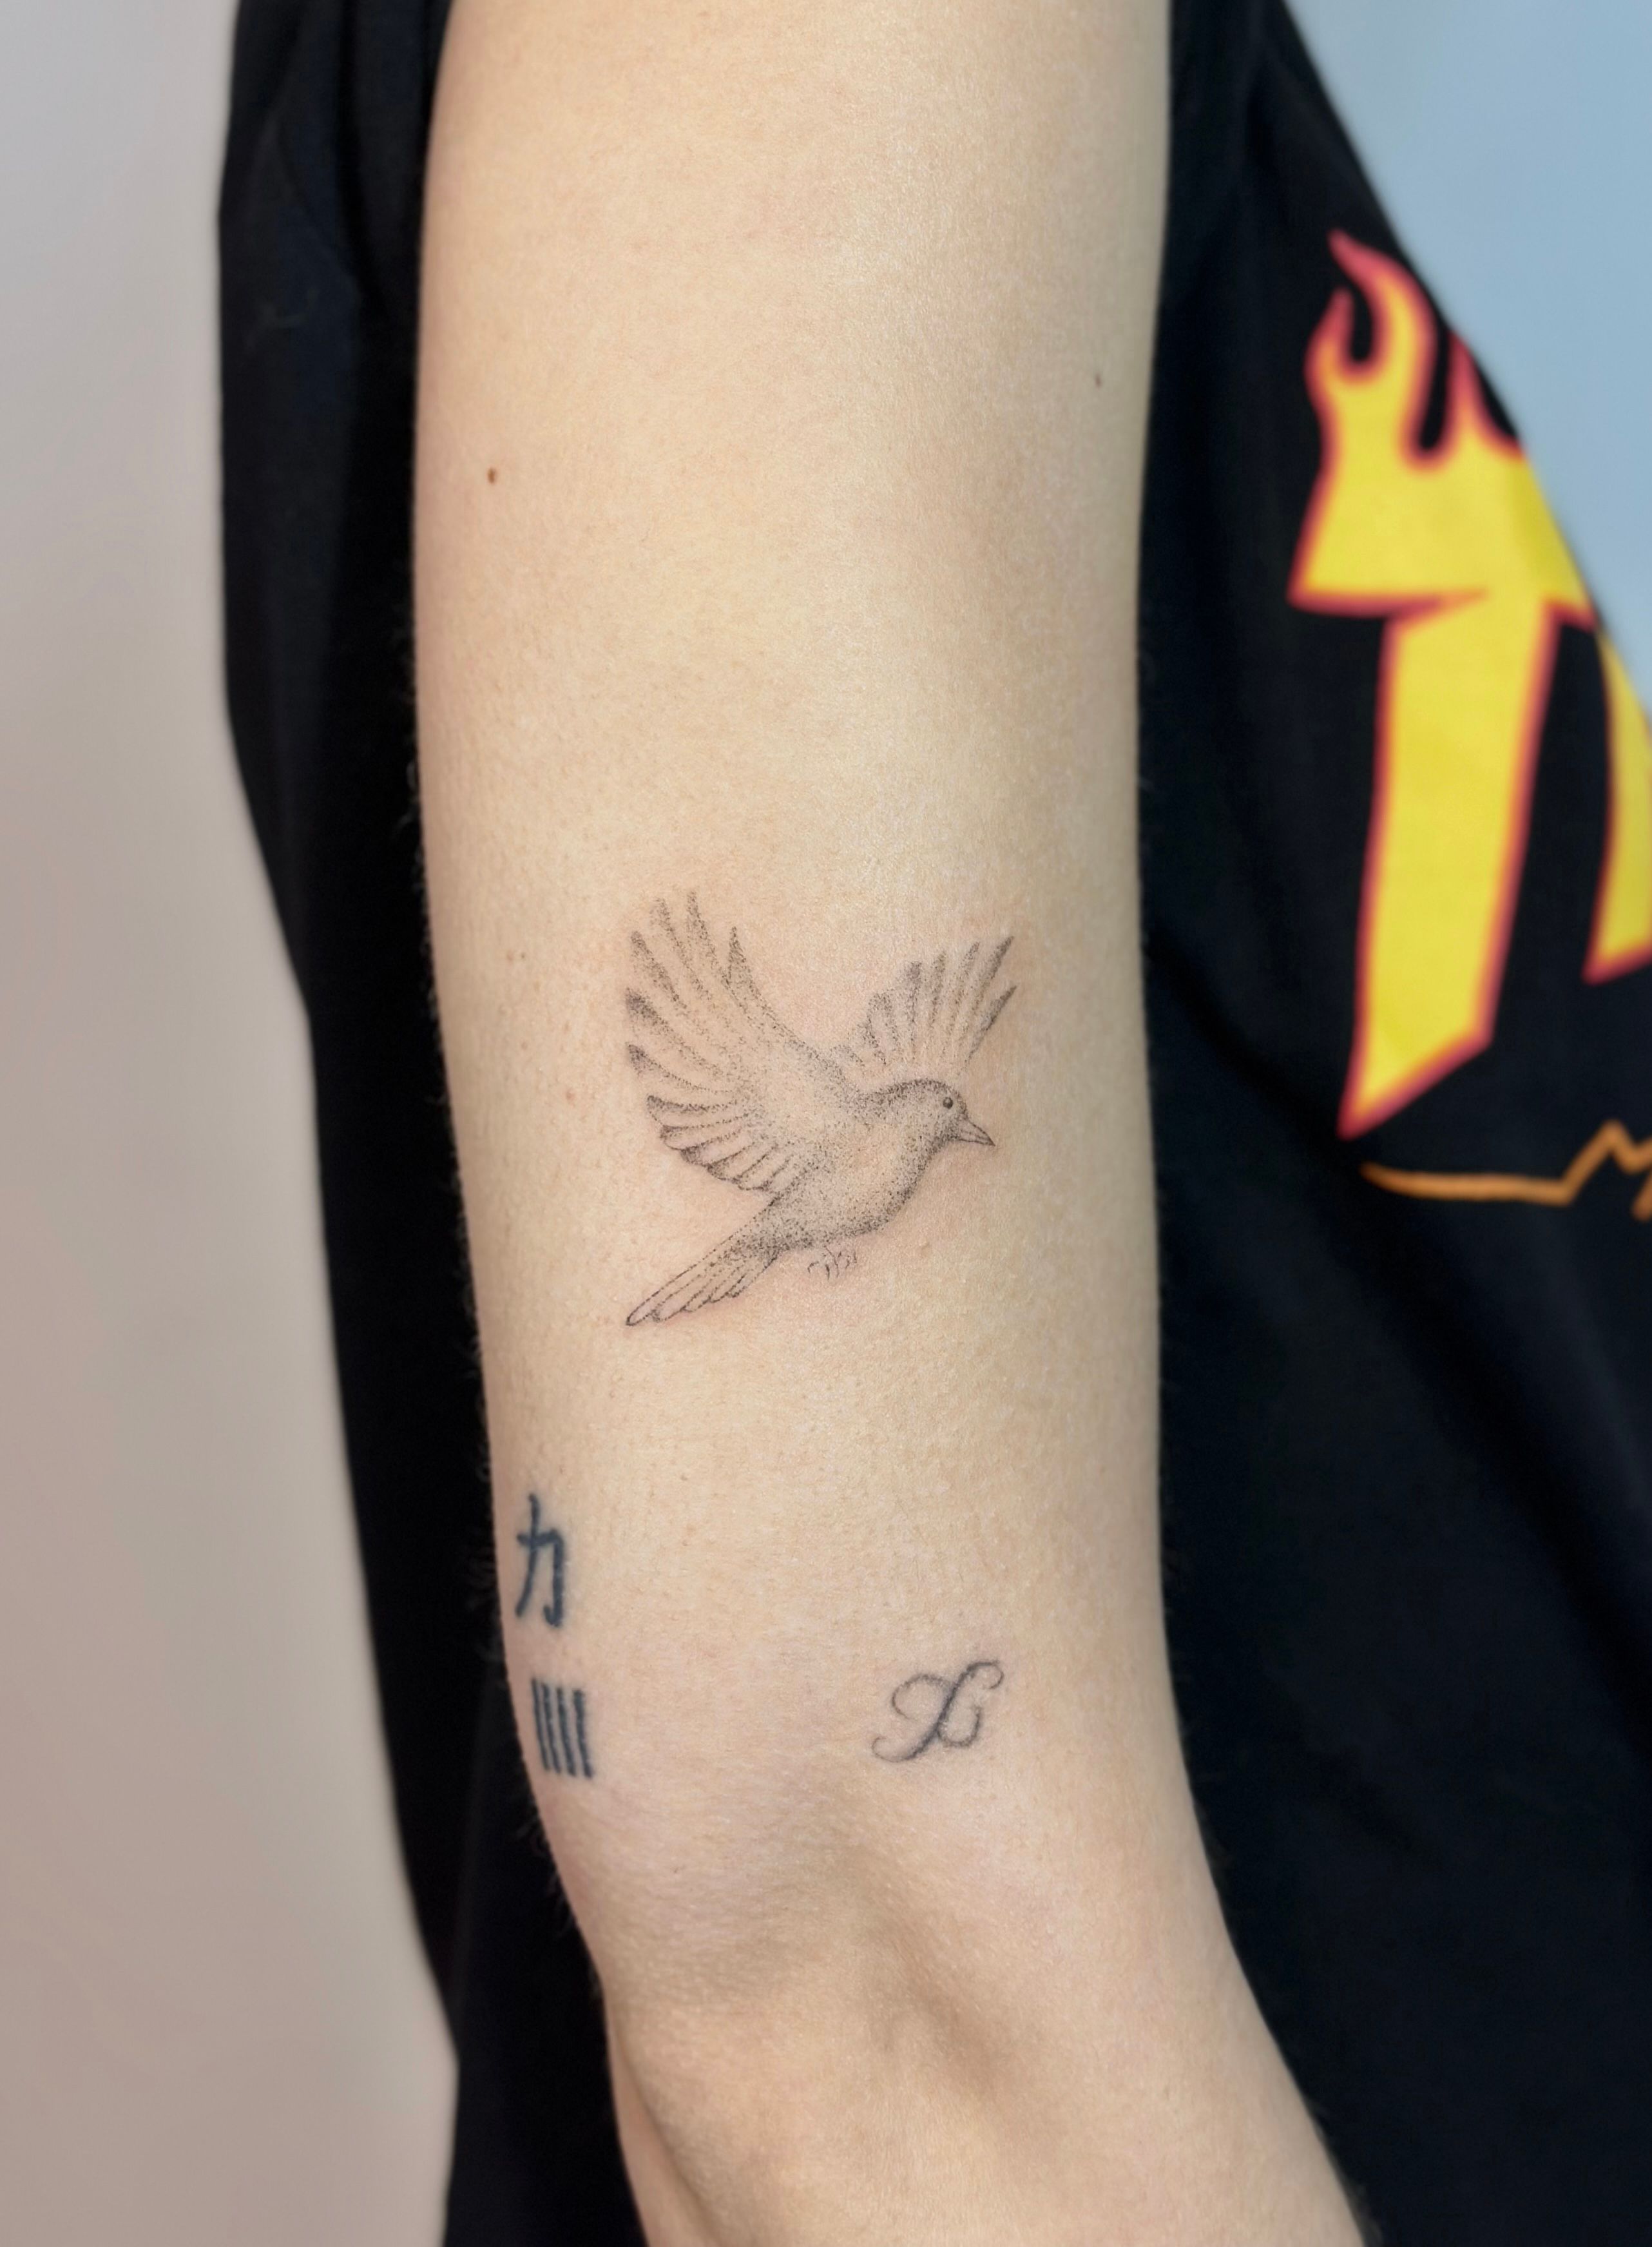 Kingfisher tattoo | Kingfisher tattoo, Tattoos, Triangle tattoo